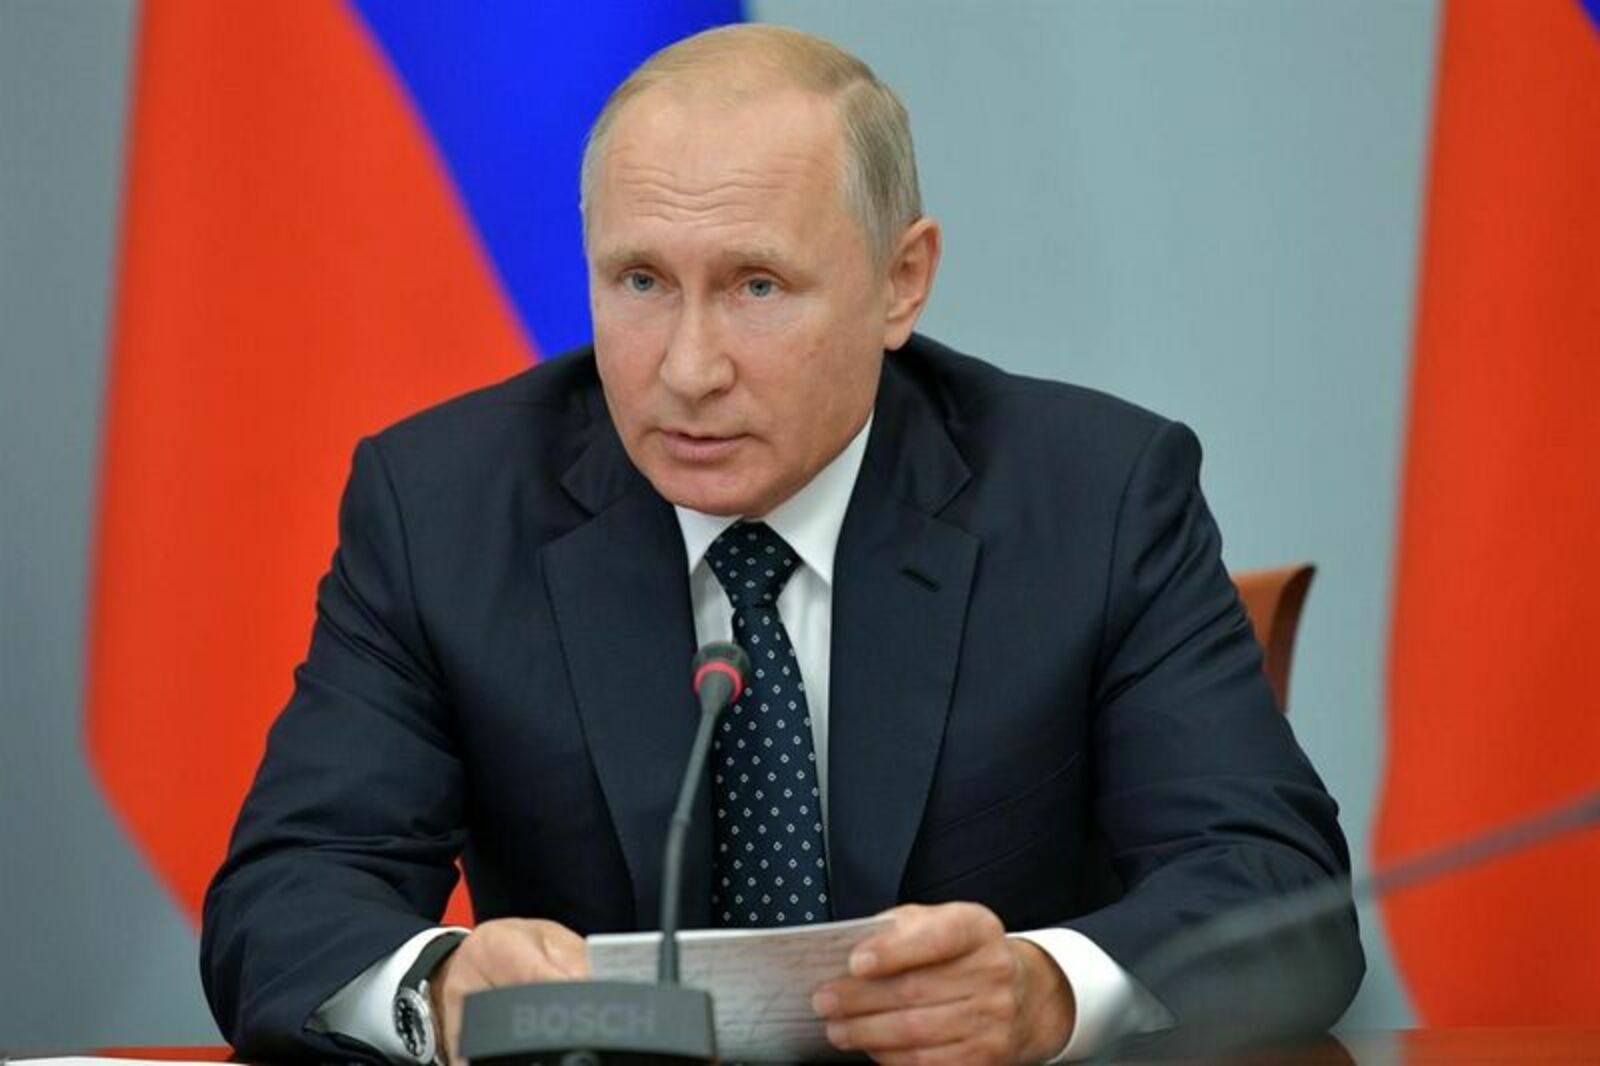 Путин предложил Совбезу обсудить вопросы патриотического воспитания